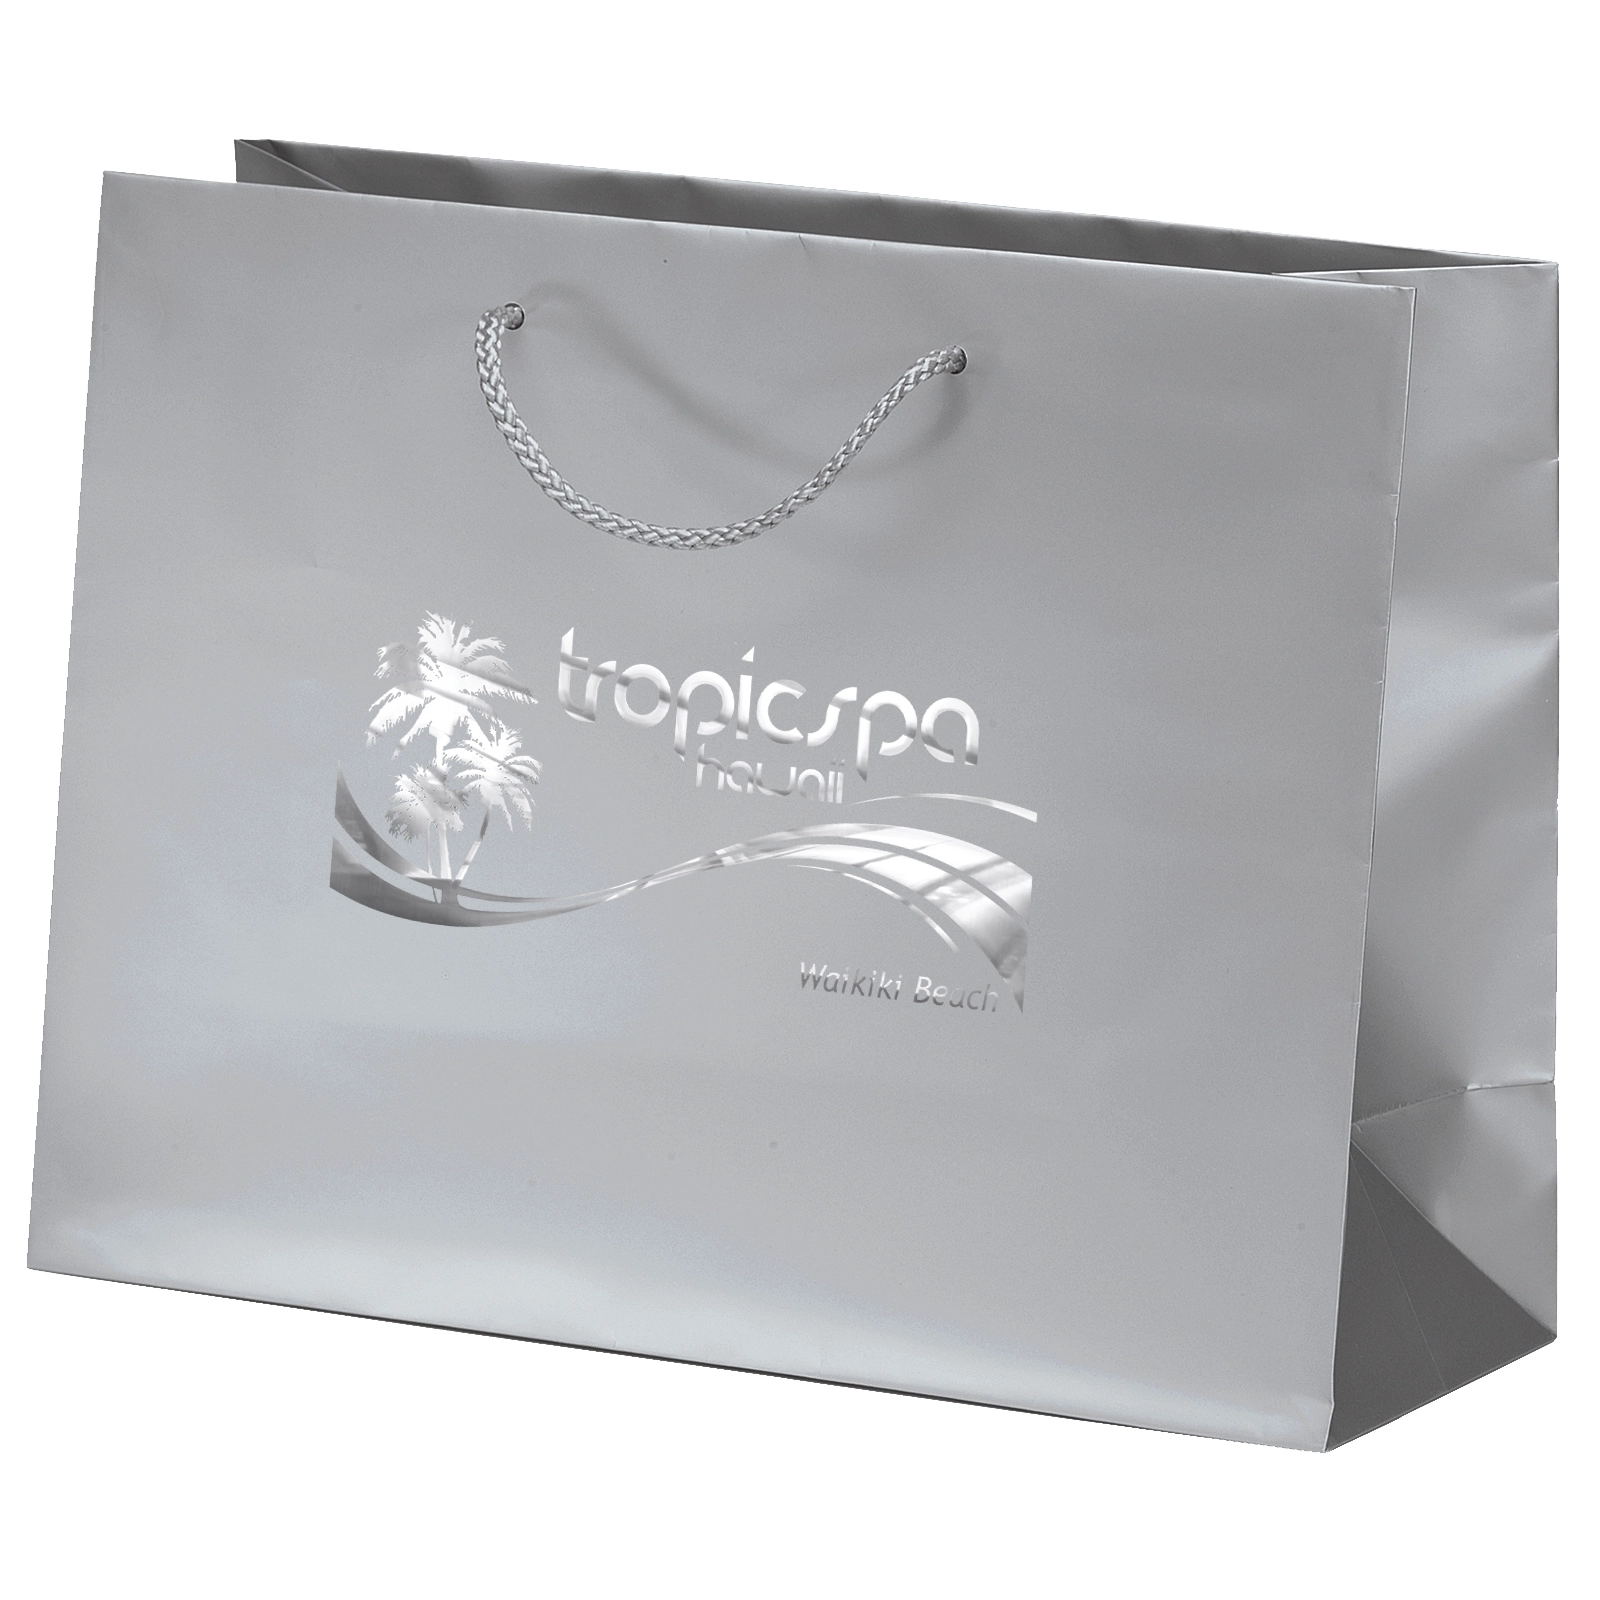 Download Matte Laminated Euro Logo Tote Bag Shopping Bag - 13 x 10 ...